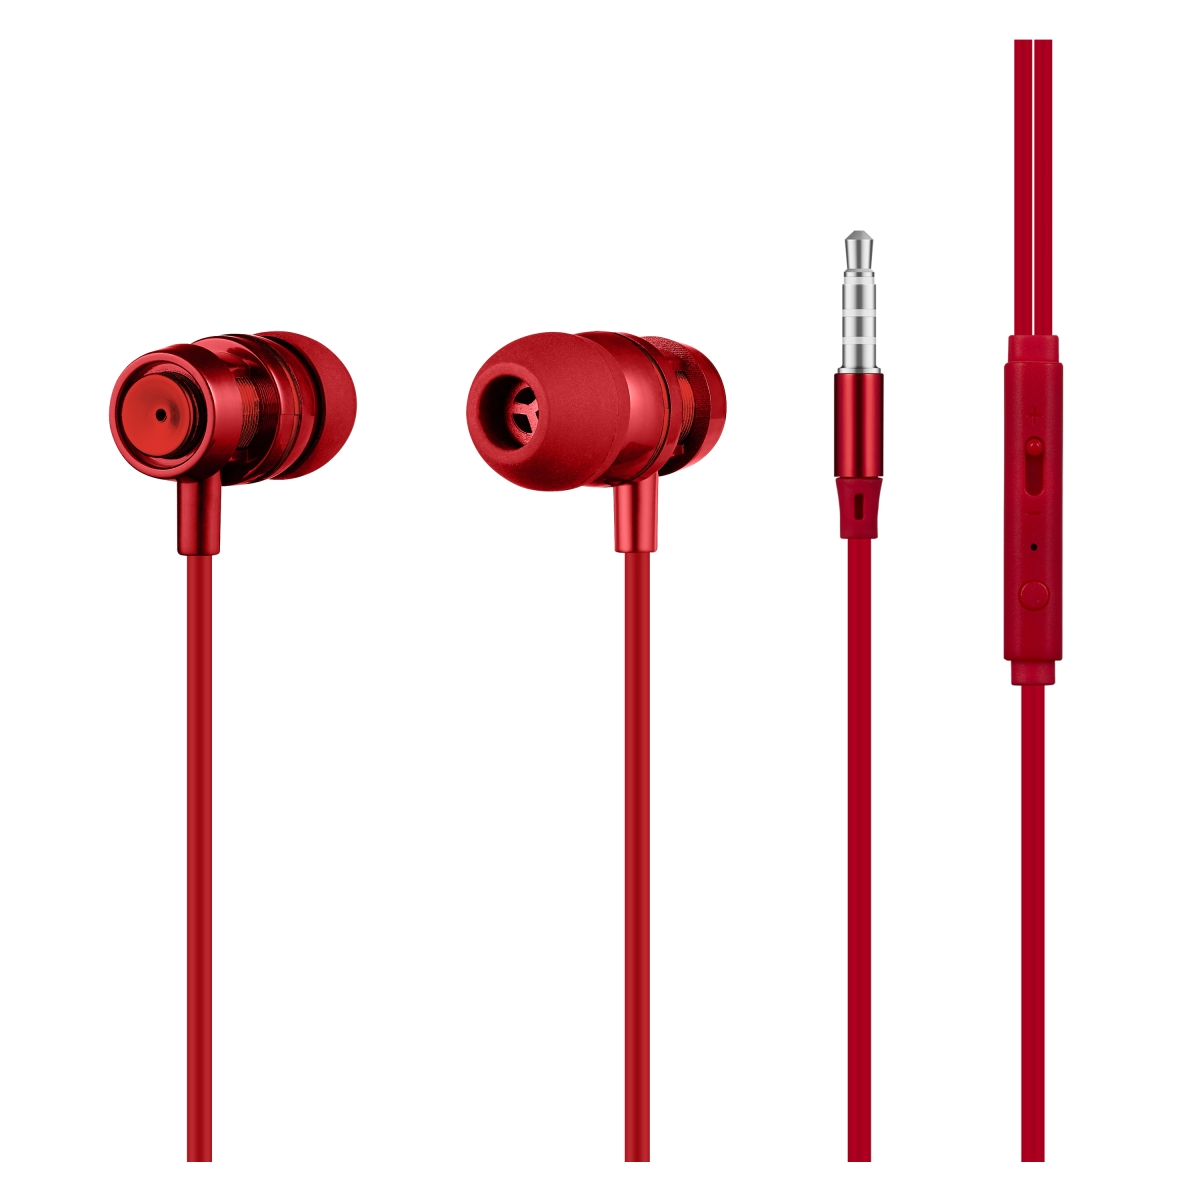 Volkano Alloy Series Earphones: Solid Red